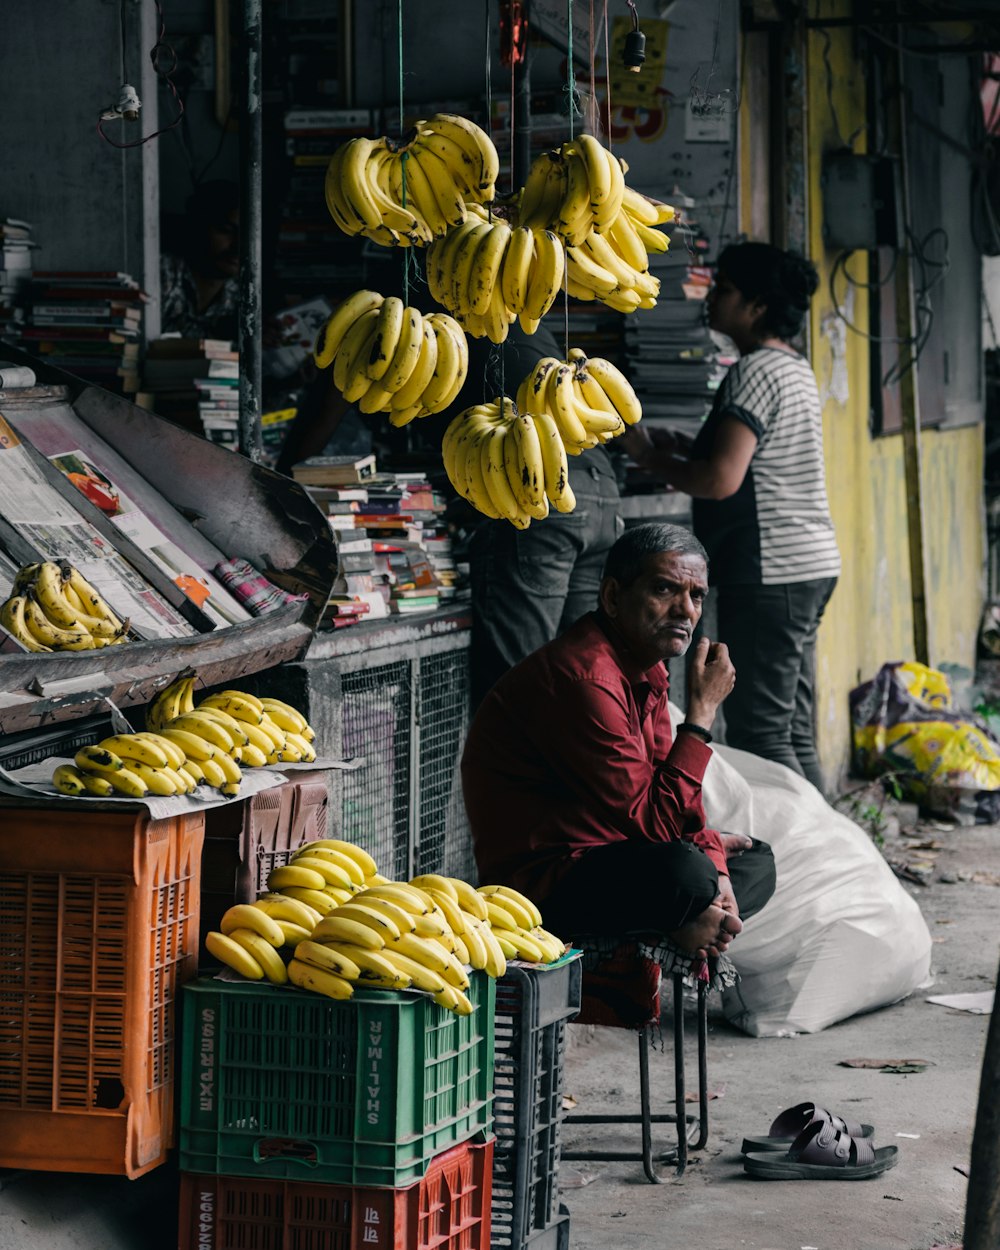 uomo seduto sulla sedia vicino alle banane